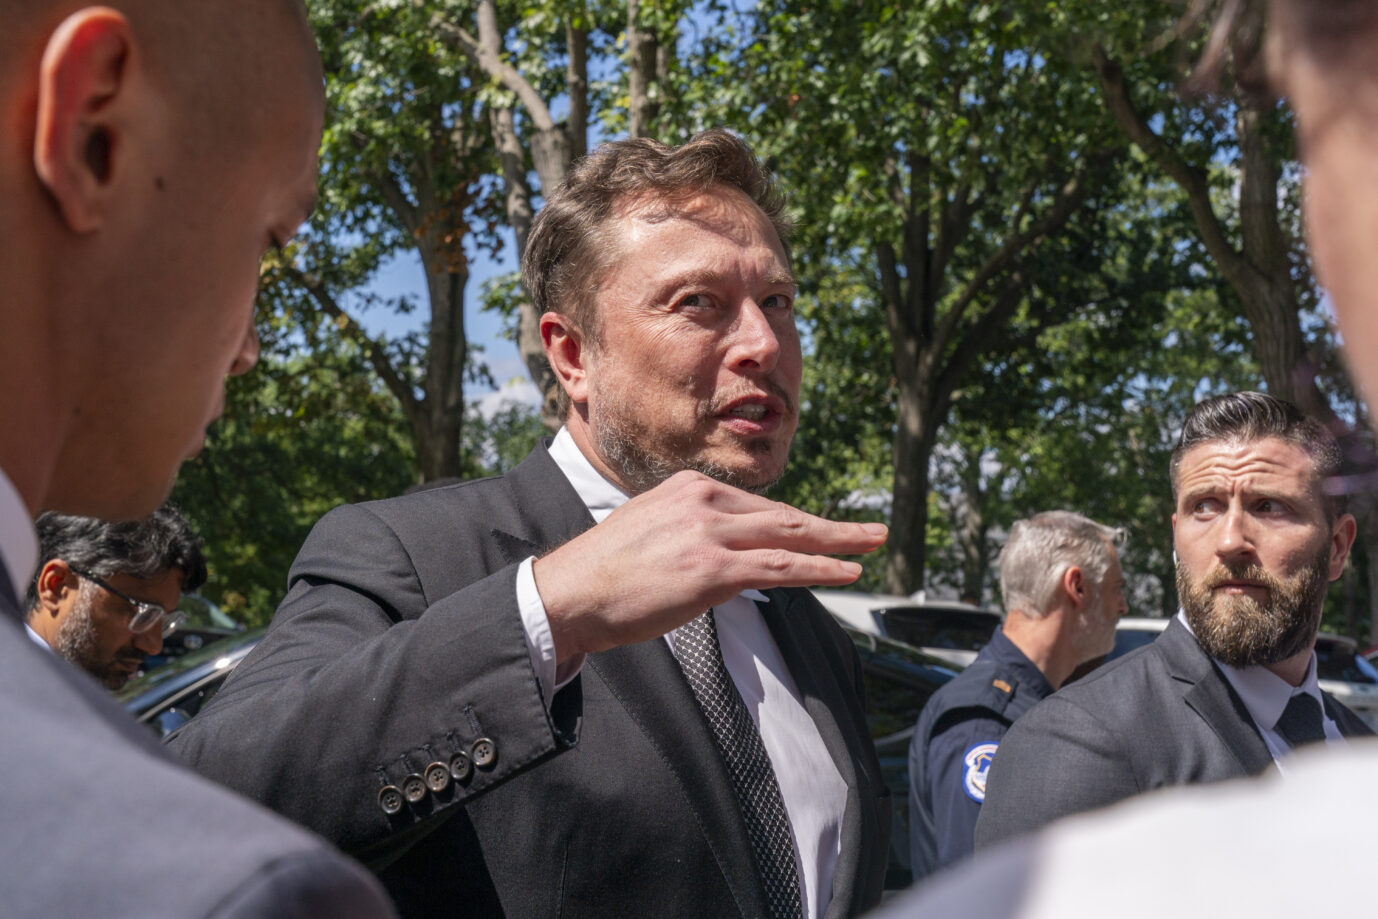 X-Chef Elon Musk bei einem Termin in New York City – nach Medienberichten dementiert der Multimilliardär, seine Plattform aus der EU zurückziehen zu wollen Foto: picture alliance / ASSOCIATED PRESS | Jacquelyn Martin